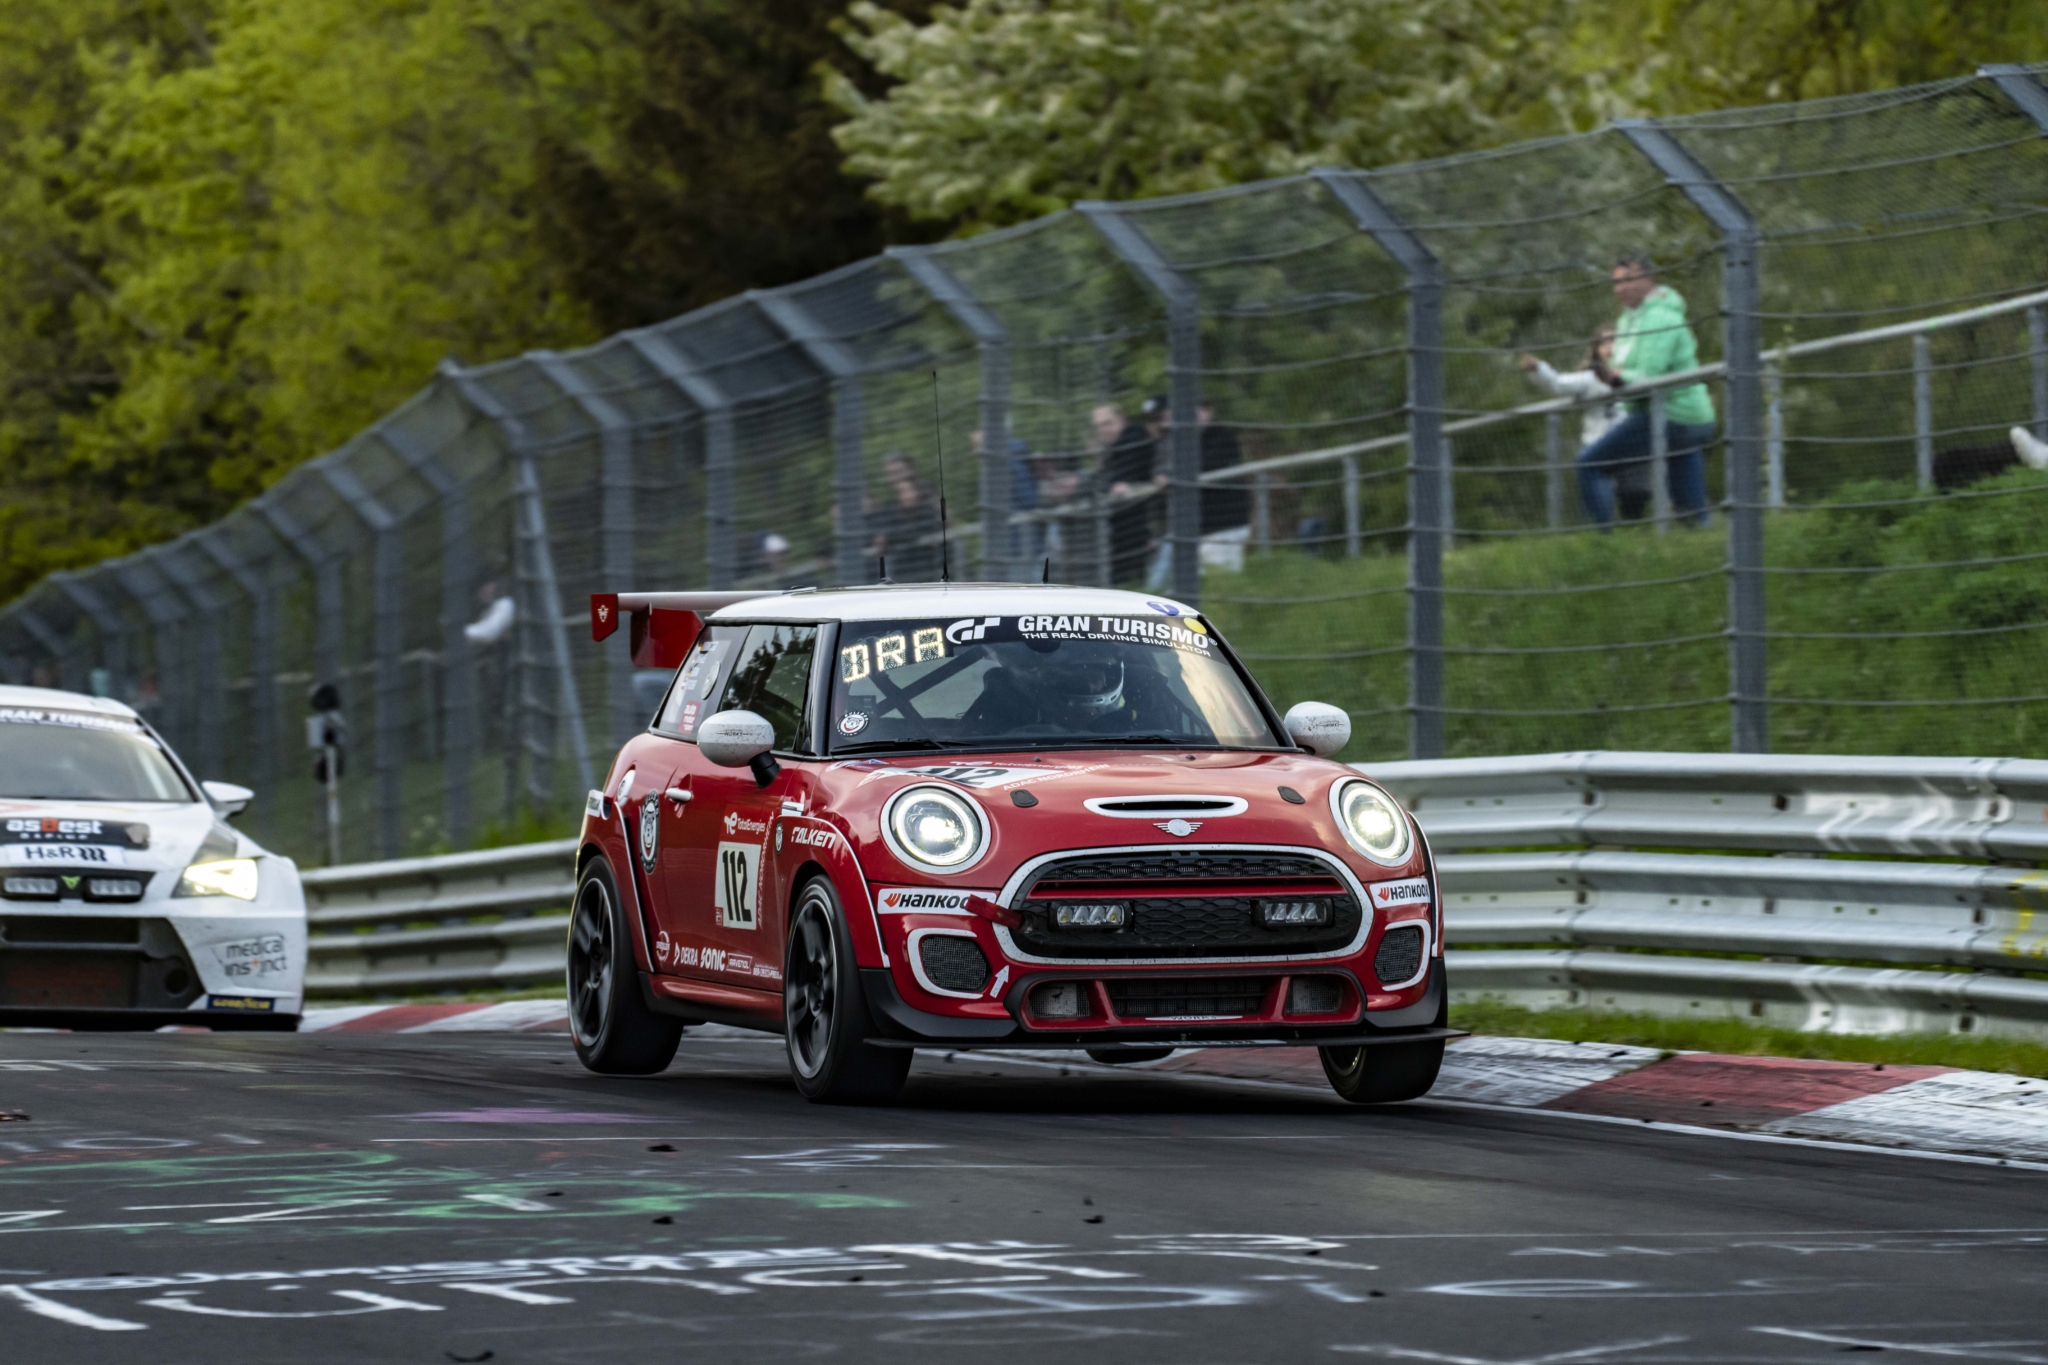 MINI John Cooper Works racing on Hankook tyres in Nürburgring 24 Hours